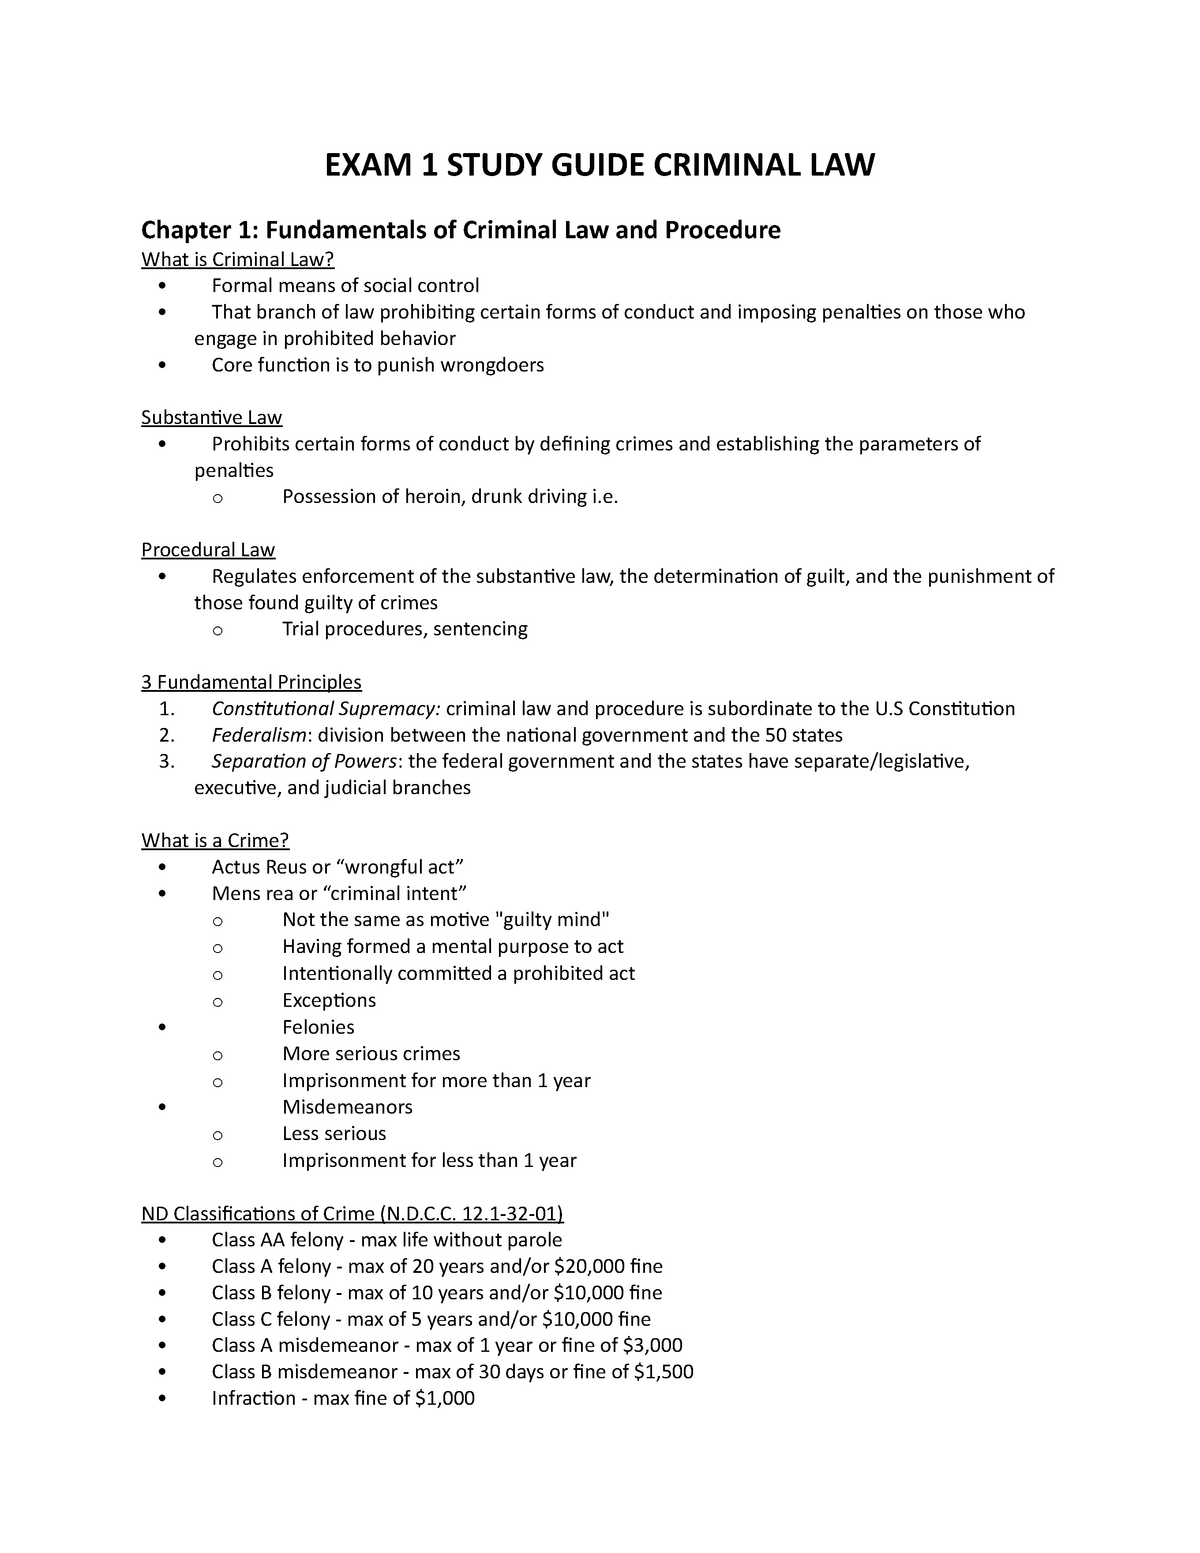 llm dissertation in criminal law pdf